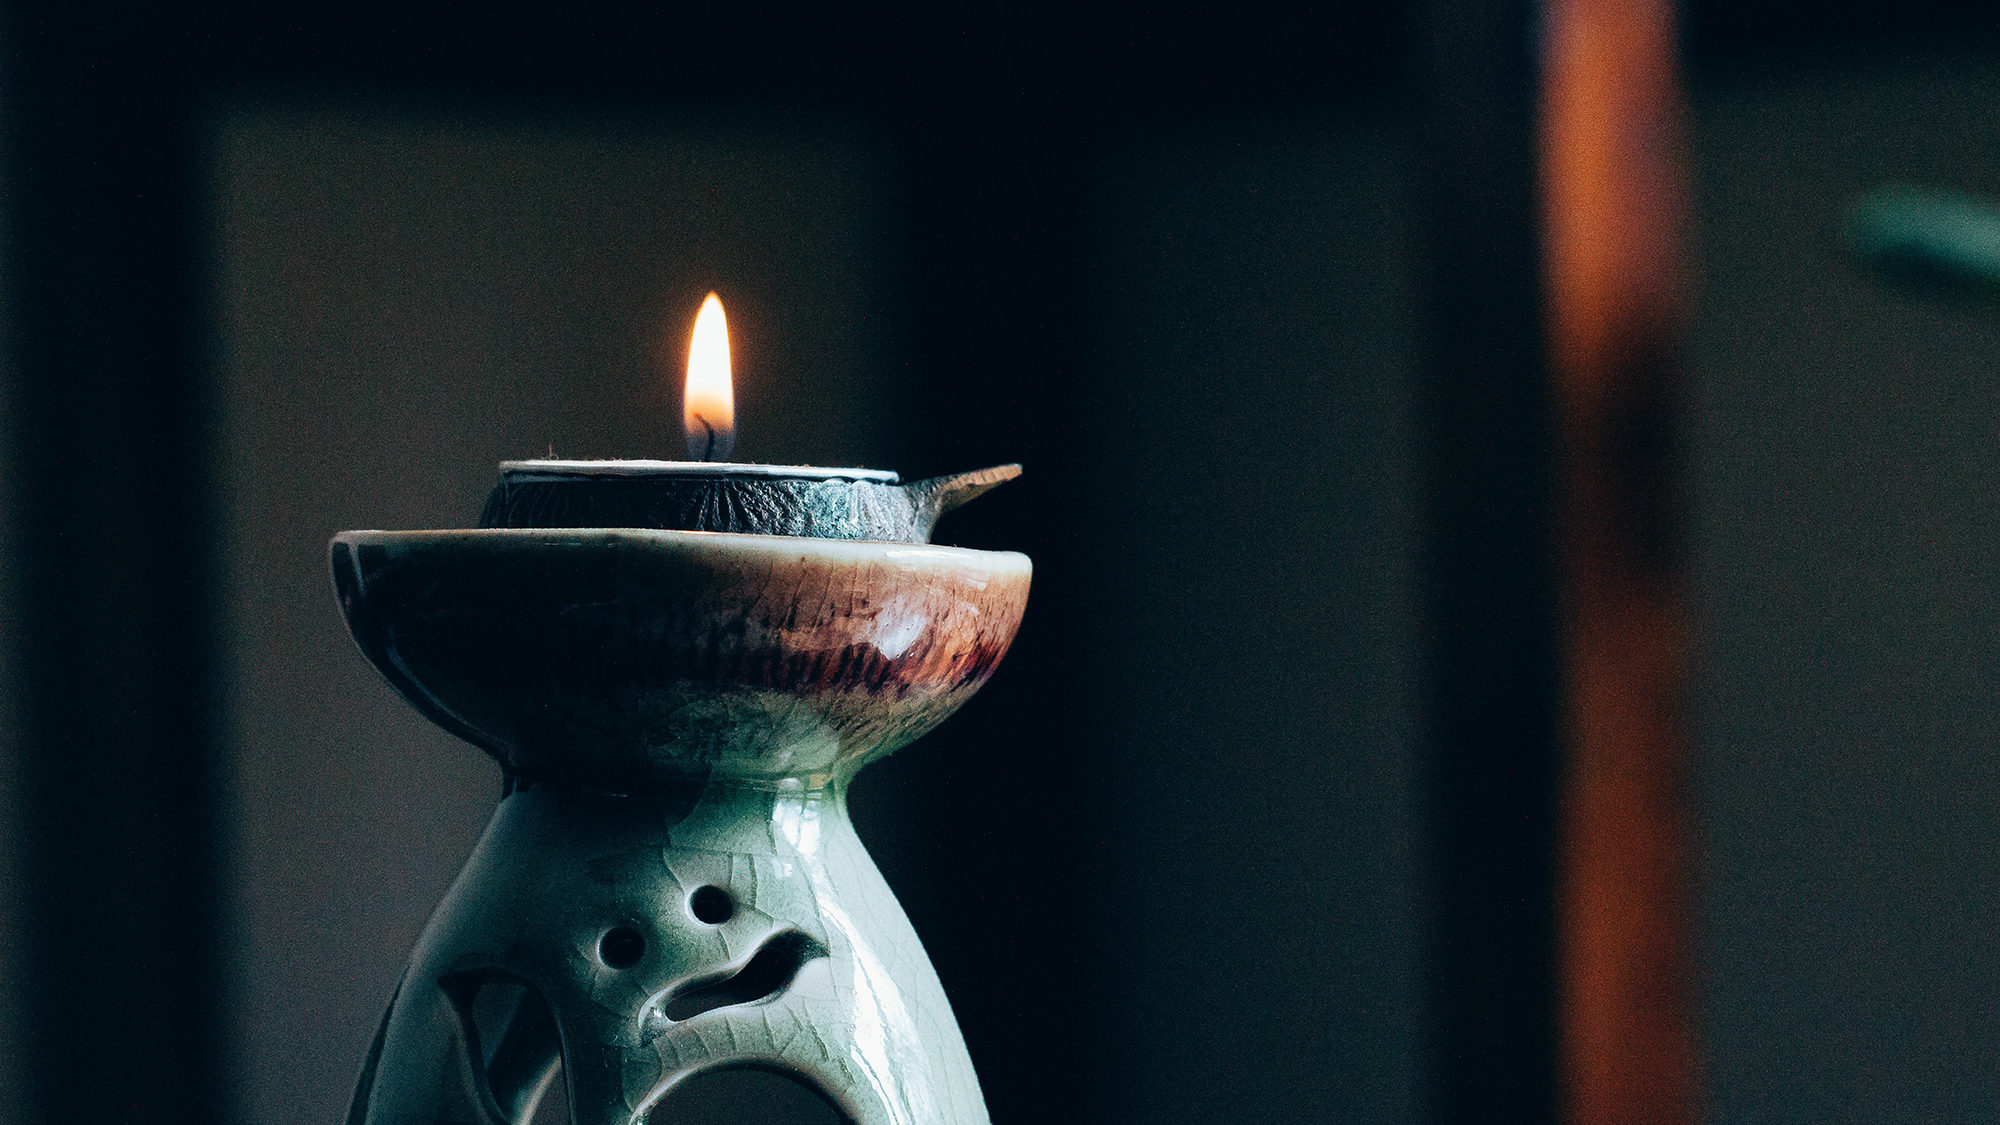 Kerzen anzünden meditieren anfangen